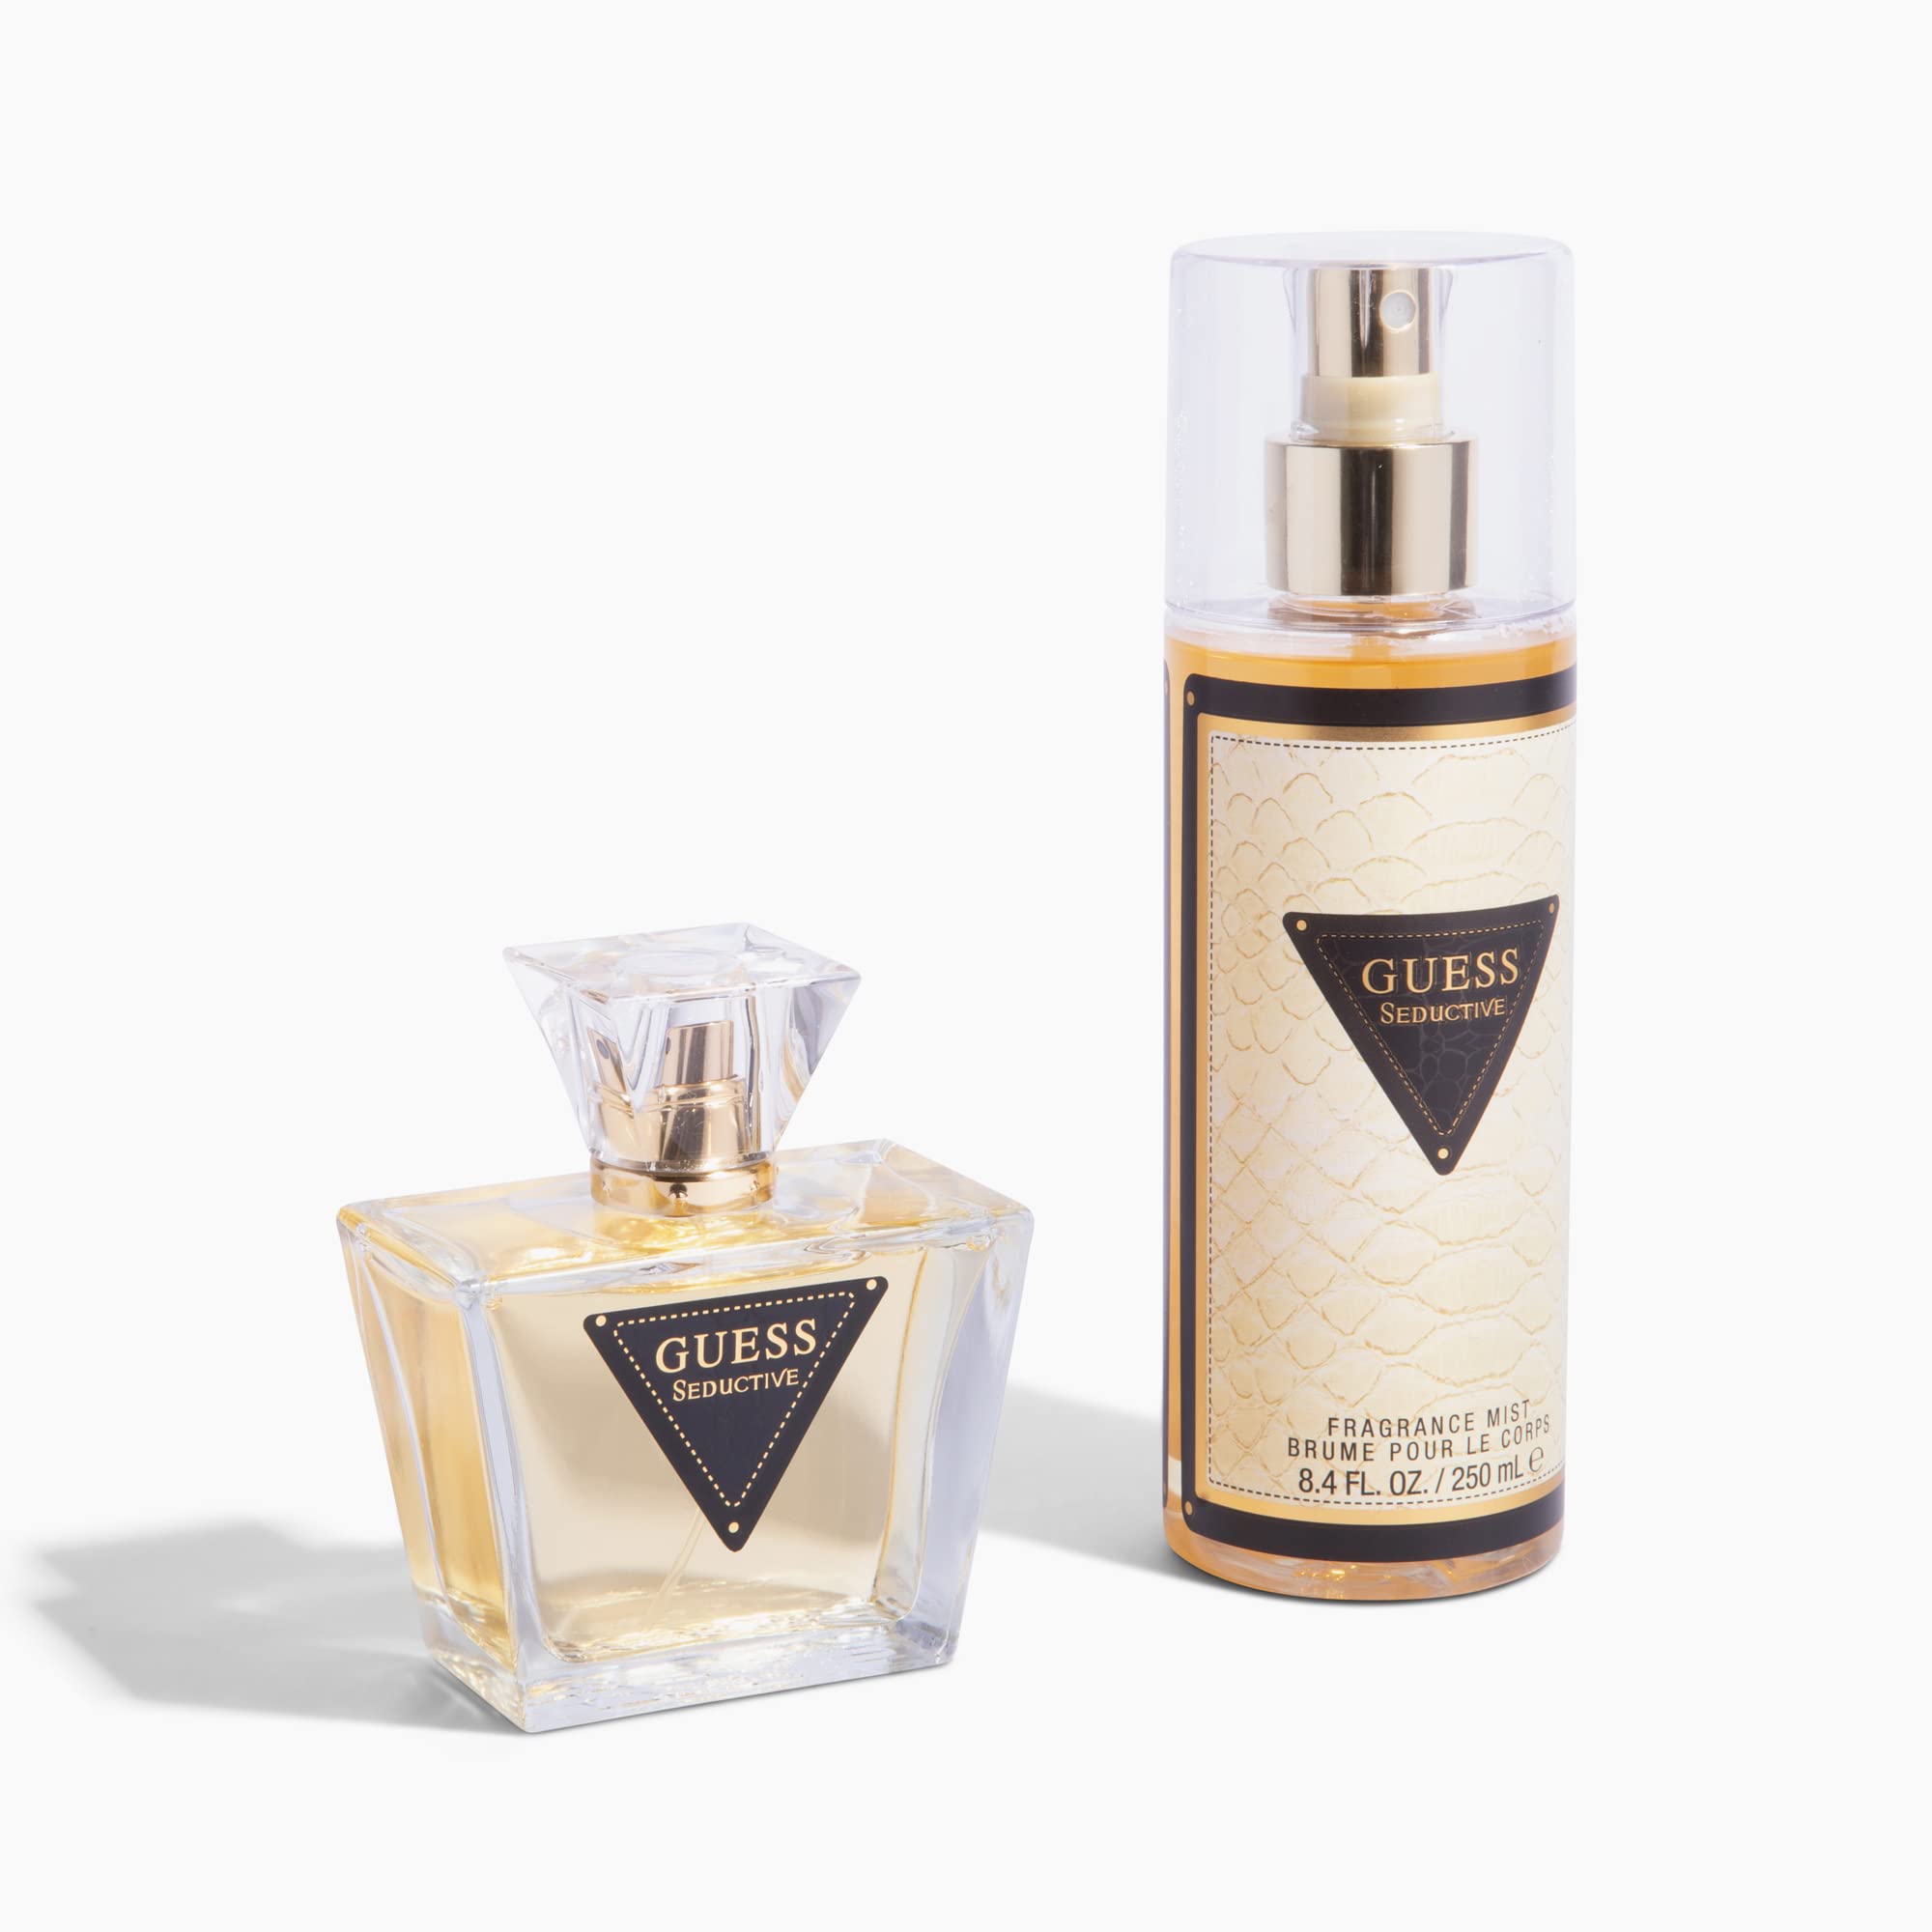 Guess Seductive EDT & Fragrance Mist Duo Set | My Perfume Shop Australia